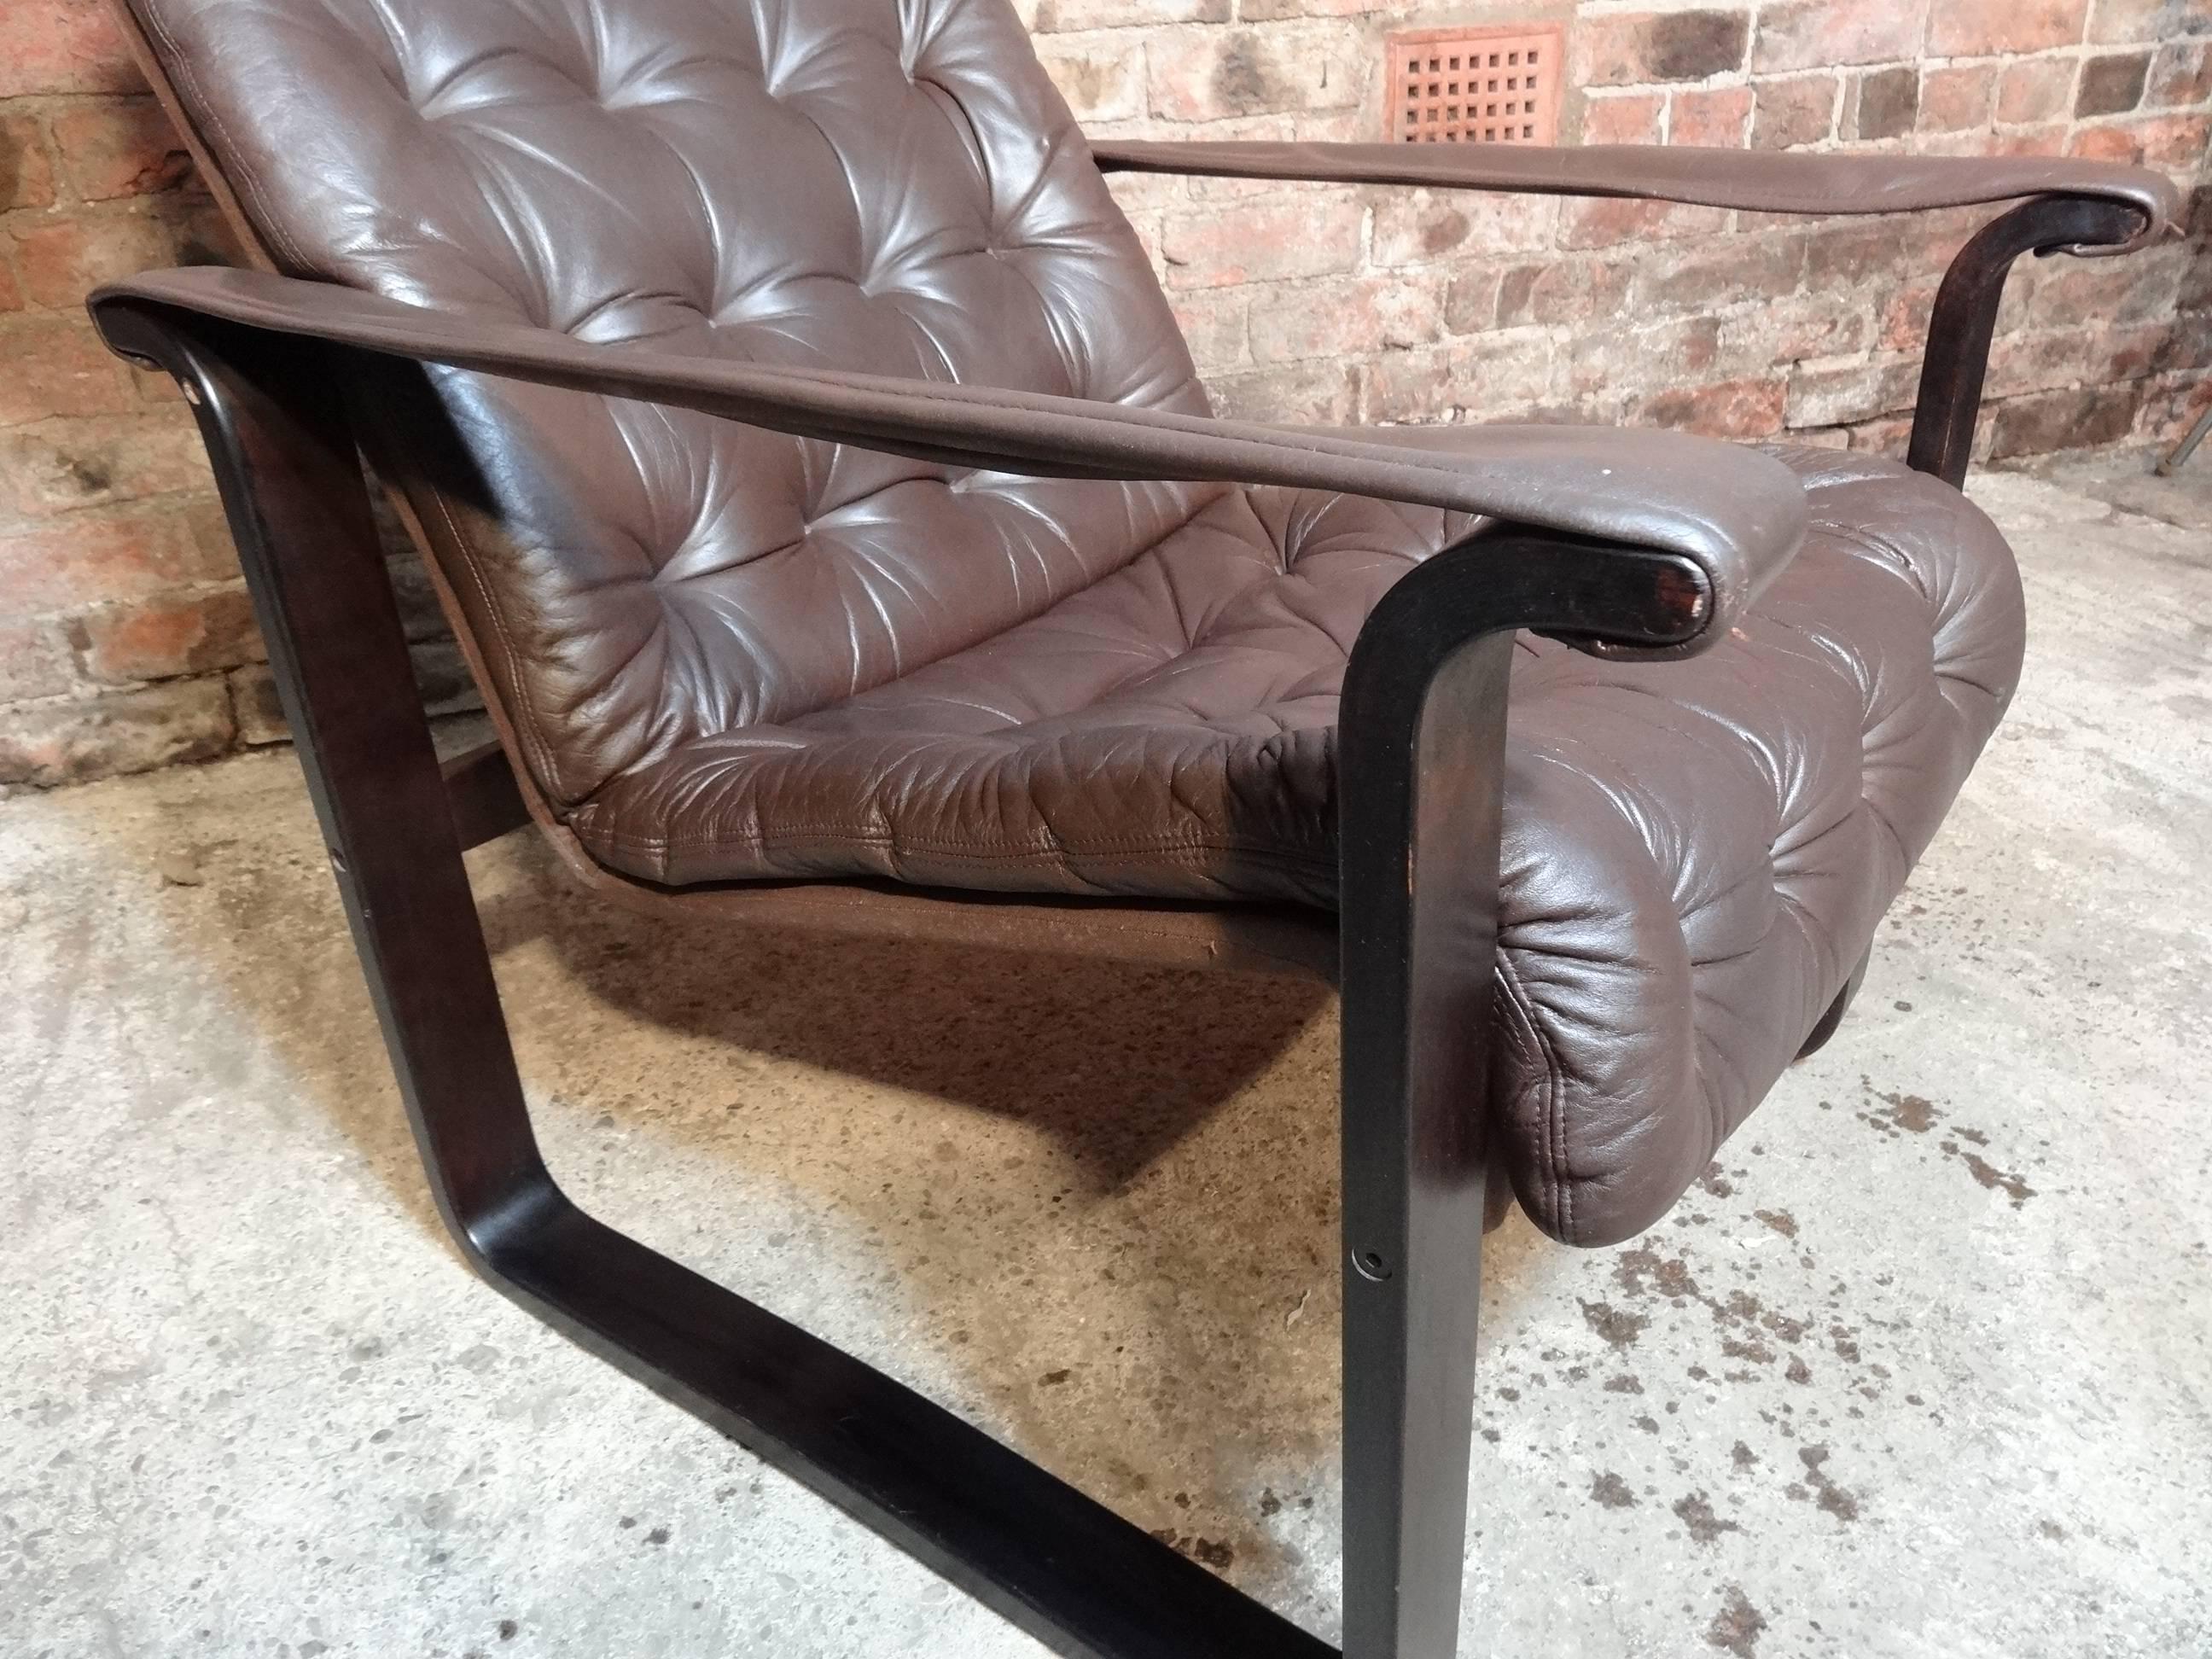 Cette chaise Finisch Dahlqvist A.B avec cadre en bois est en parfait état, le cuir est également en parfait état. Cette chaise Finisch classique est l'antiquité du futur et s'intègre parfaitement à tout décor.

Hauteur du siège : 40cm, hauteur :